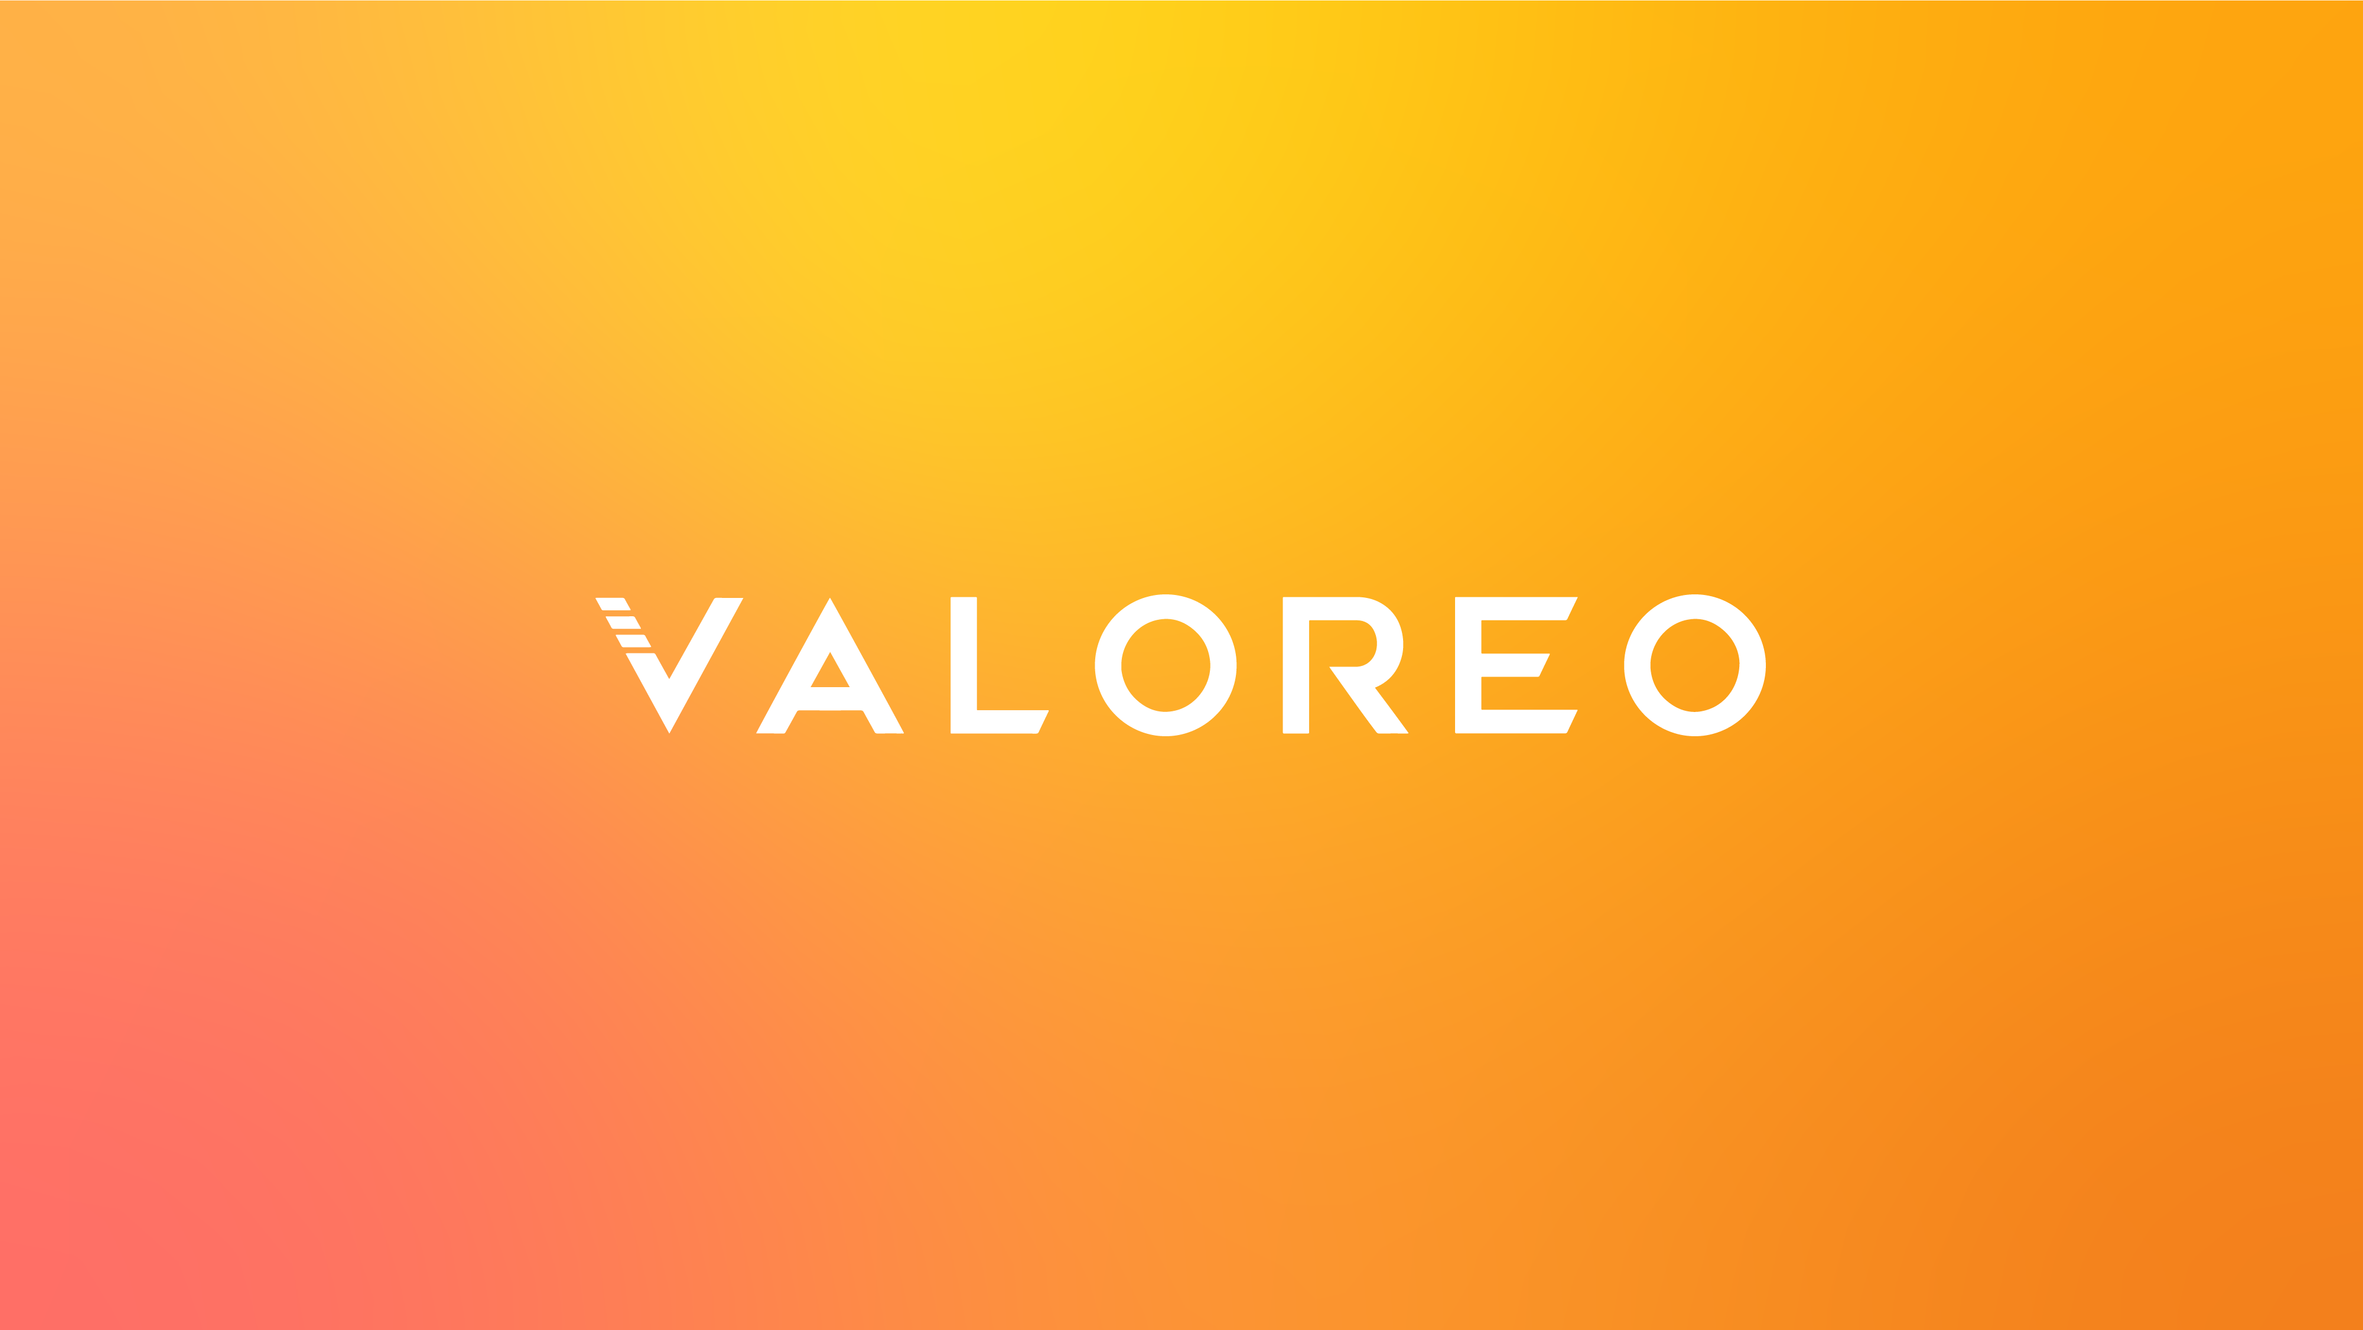 VALOREO, pionero en construir el holding de marcas de comercio electrónico del siglo 21 en América Latina, recaudó 30 millones de dólares